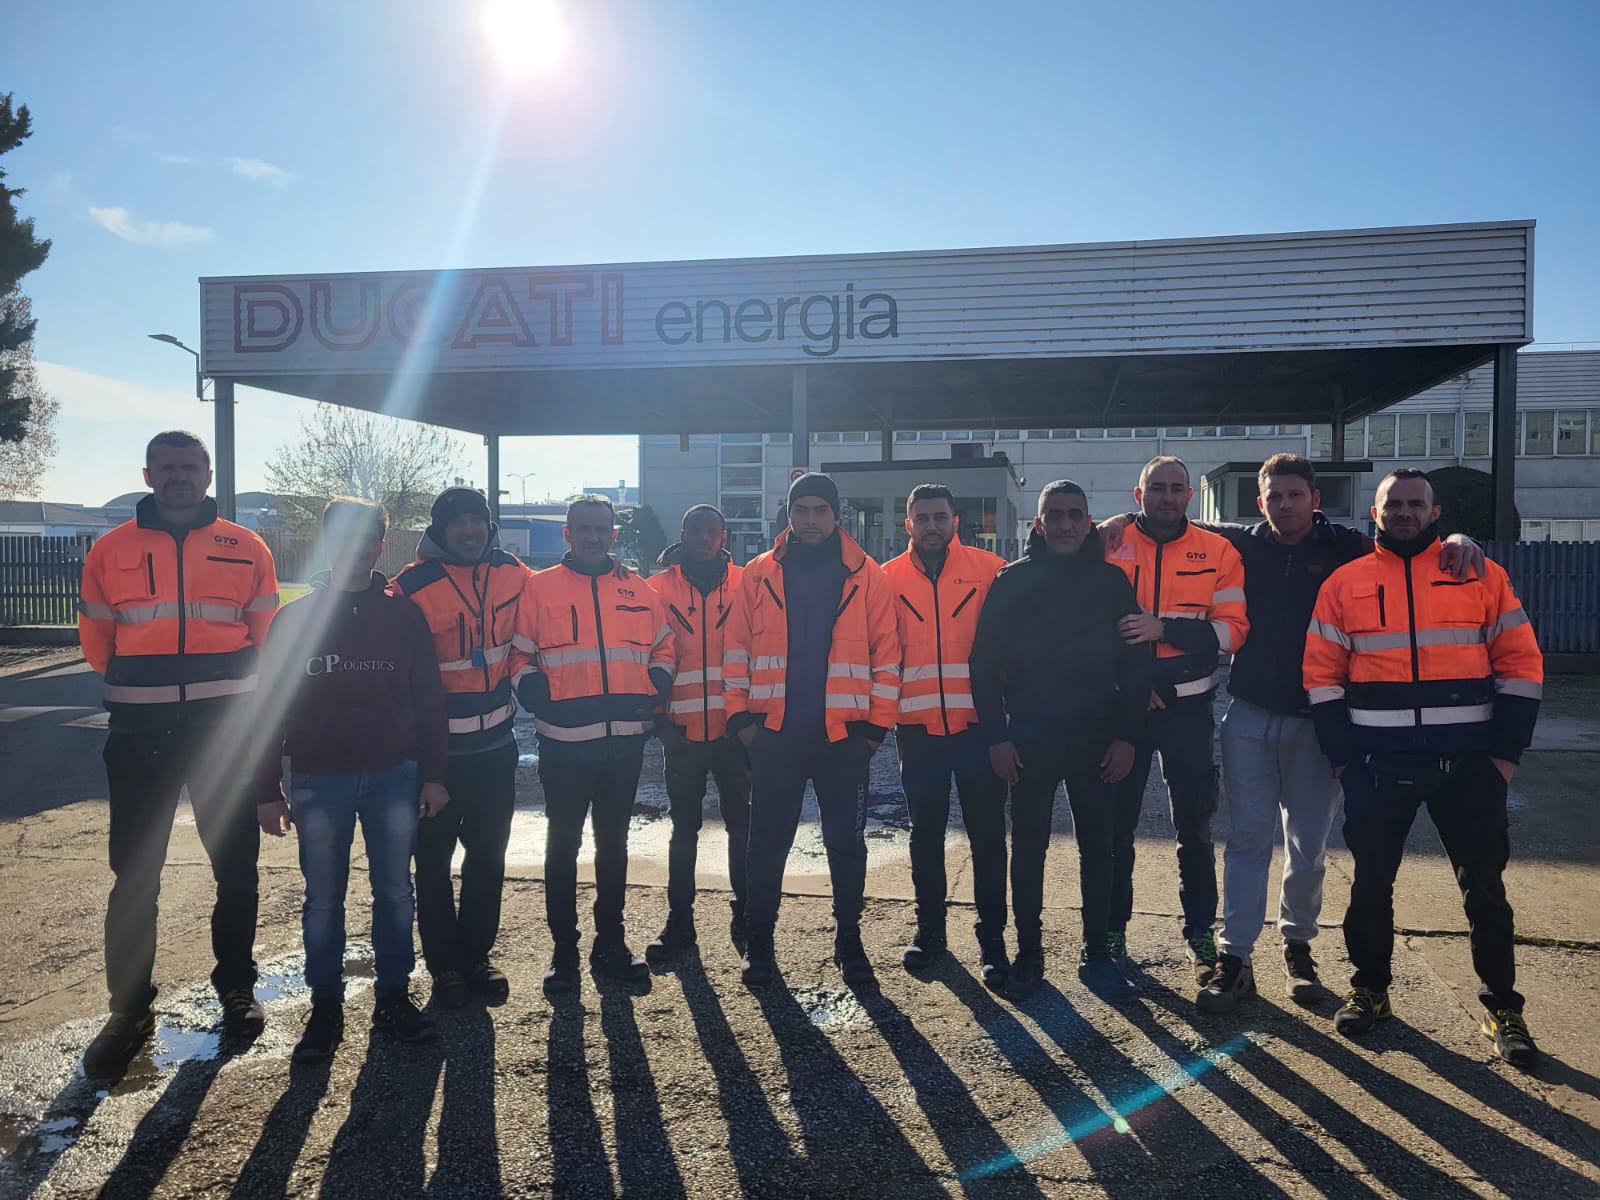 Sottoscritto accordo per la salvaguardia occupazionale  dopo la chiusura dell'appalto di logistica  di Ducati Energia a Borgo Panigale